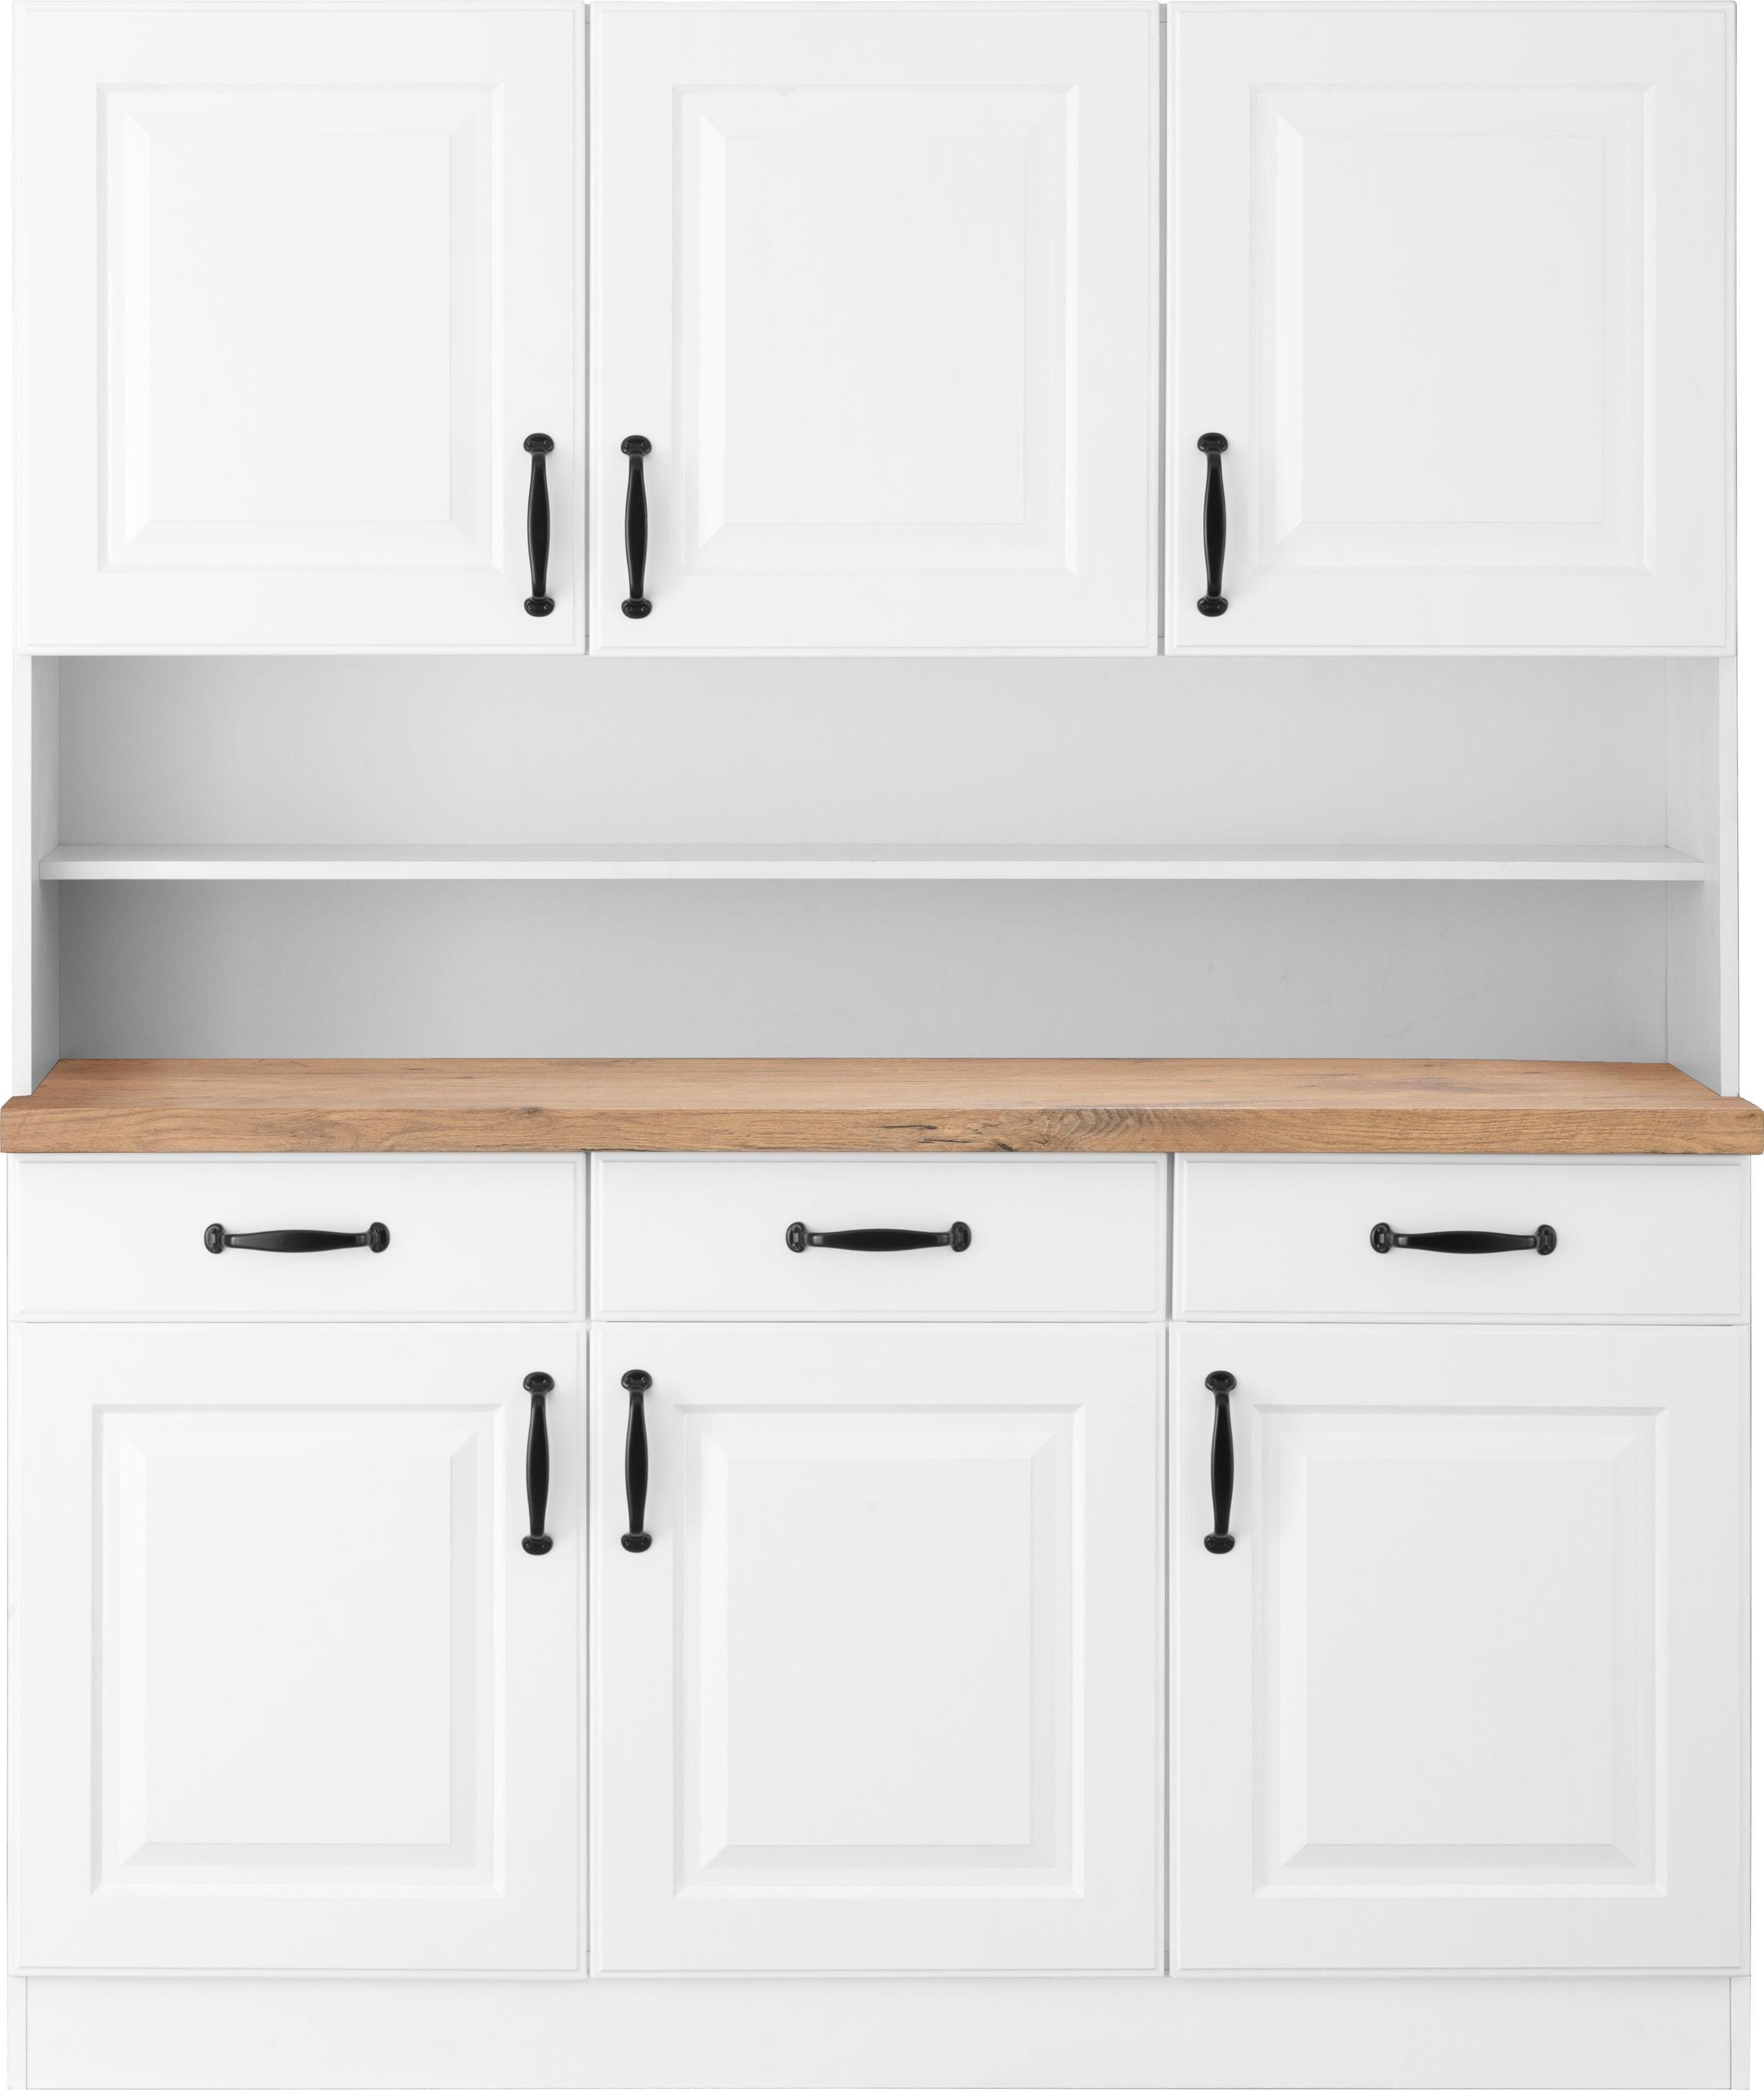 150 cm mit | Erla weiß/kastelleichefarben Küchen weiß Küchenbuffet wiho Kassettenfront breit